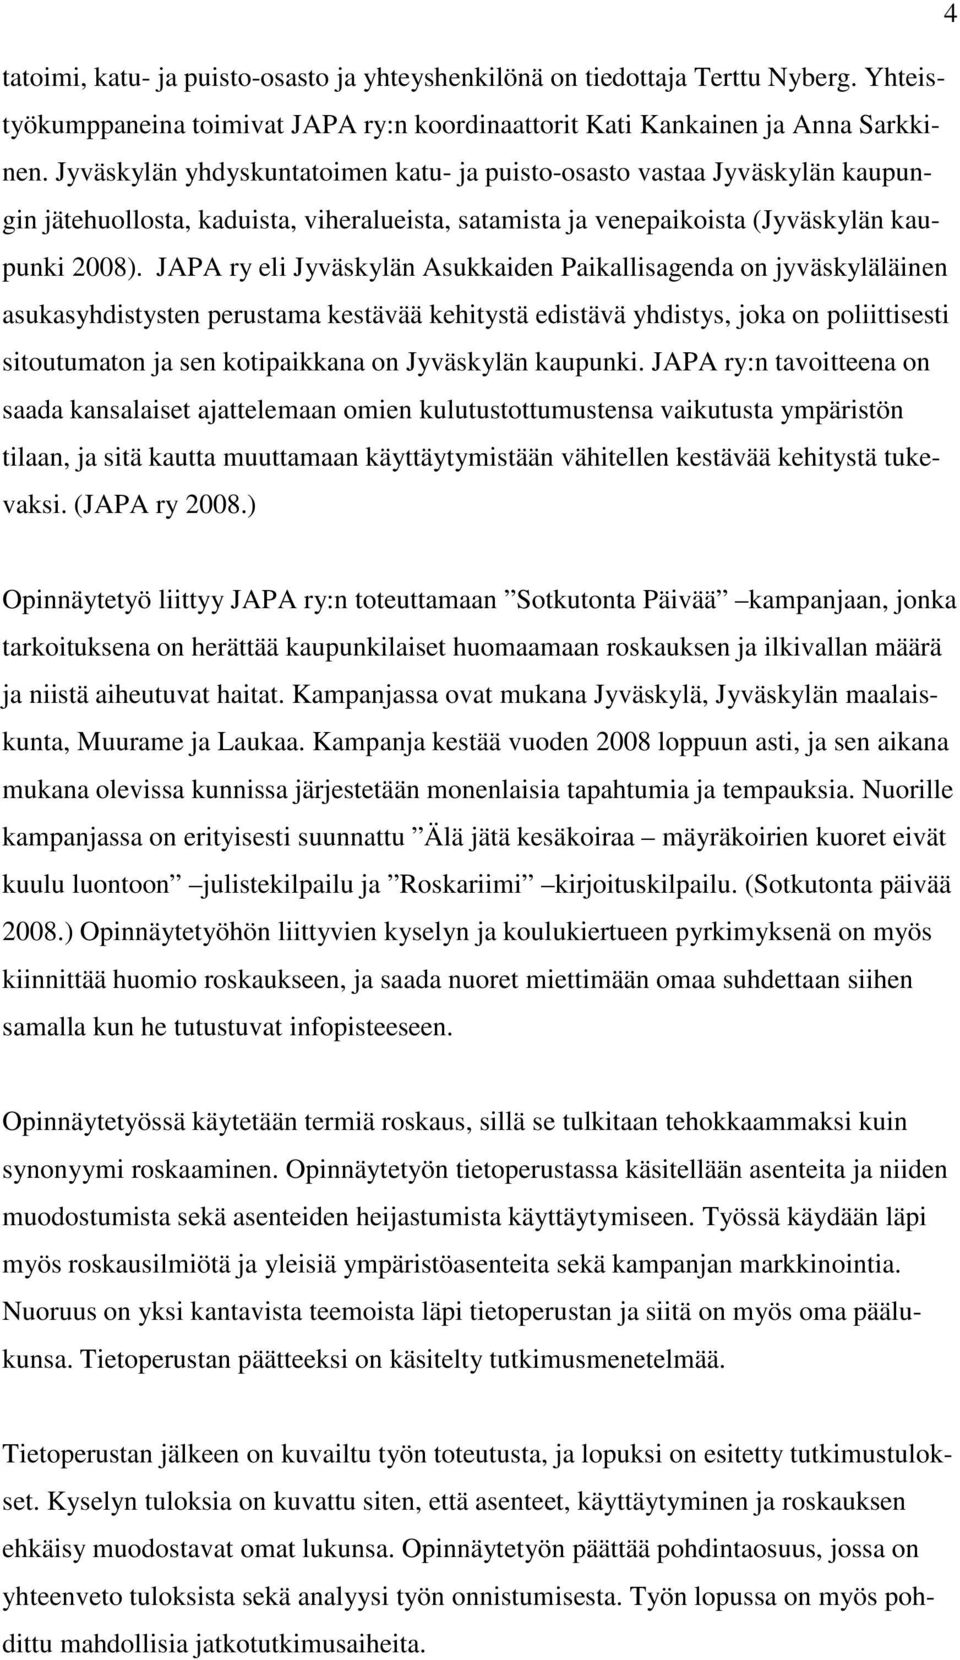 JAPA ry eli Jyväskylän Asukkaiden Paikallisagenda on jyväskyläläinen asukasyhdistysten perustama kestävää kehitystä edistävä yhdistys, joka on poliittisesti sitoutumaton ja sen kotipaikkana on